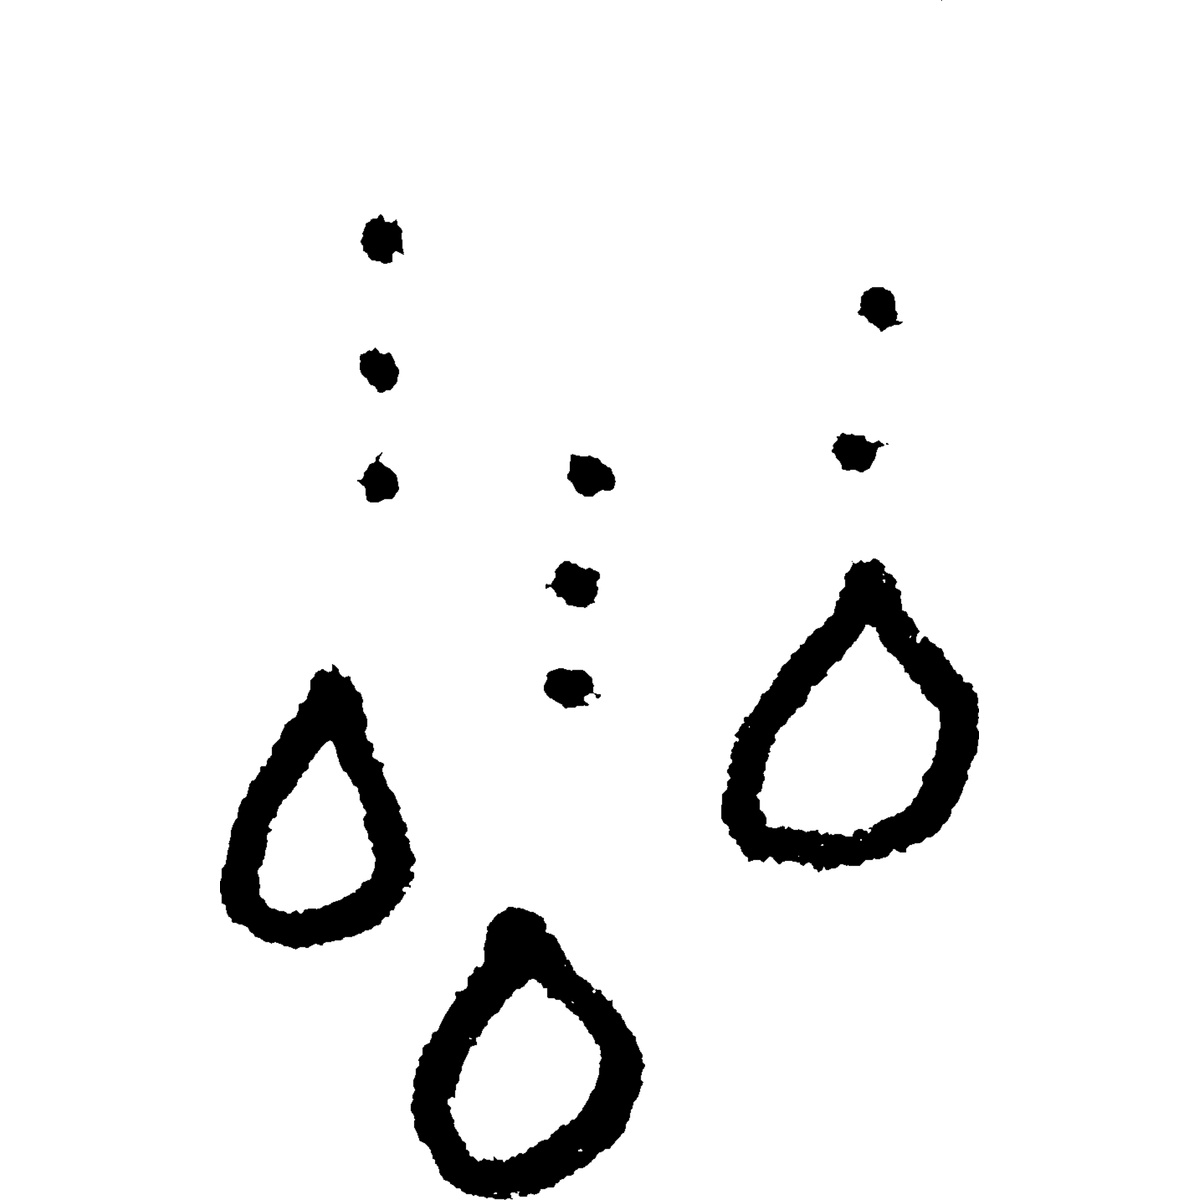 雨水・しずくCのイラスト / Rainwater / Drop C Illustration